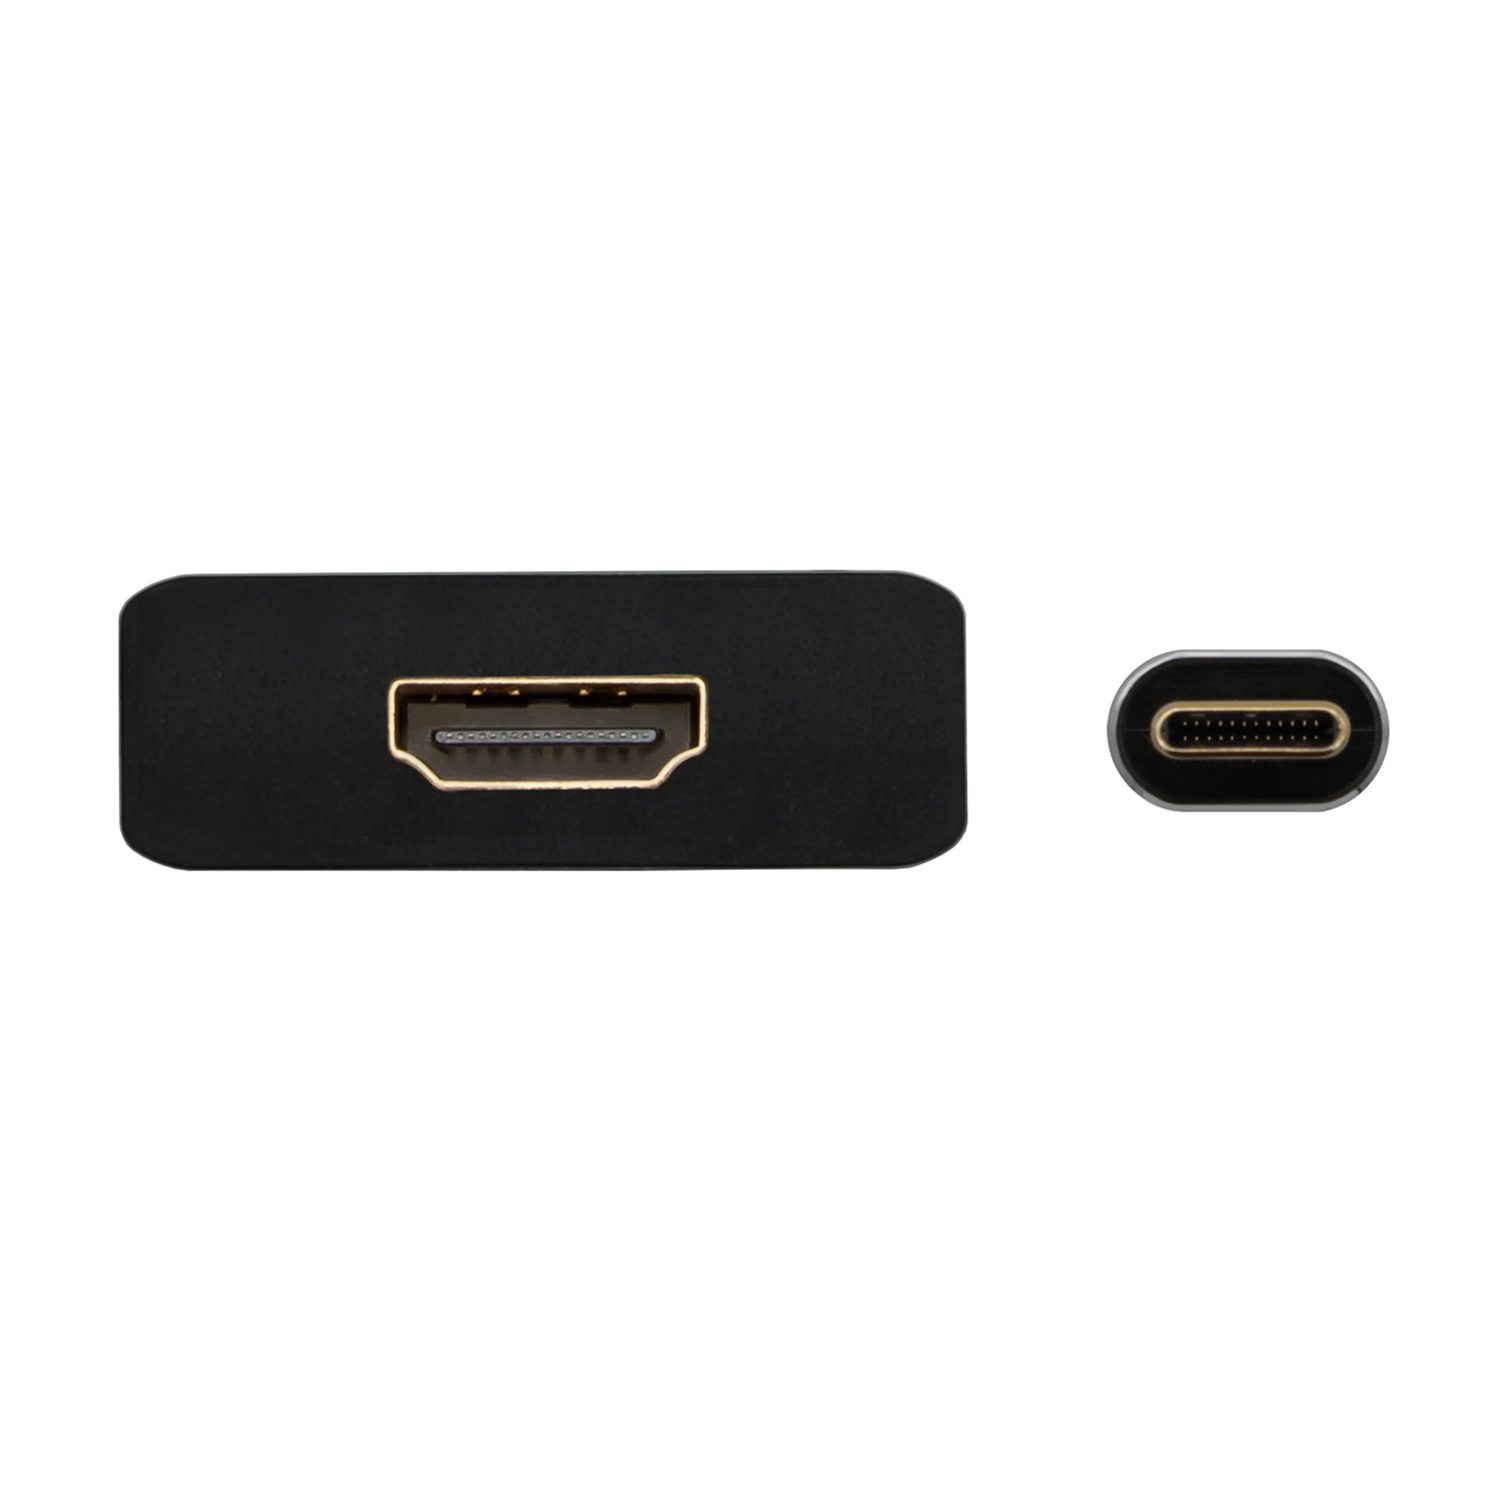 Aisens Convertisseur USB-C vers HDMI 4K@30Hz - USB-C/M-HDMI/H - 15cm - Couleur Noir